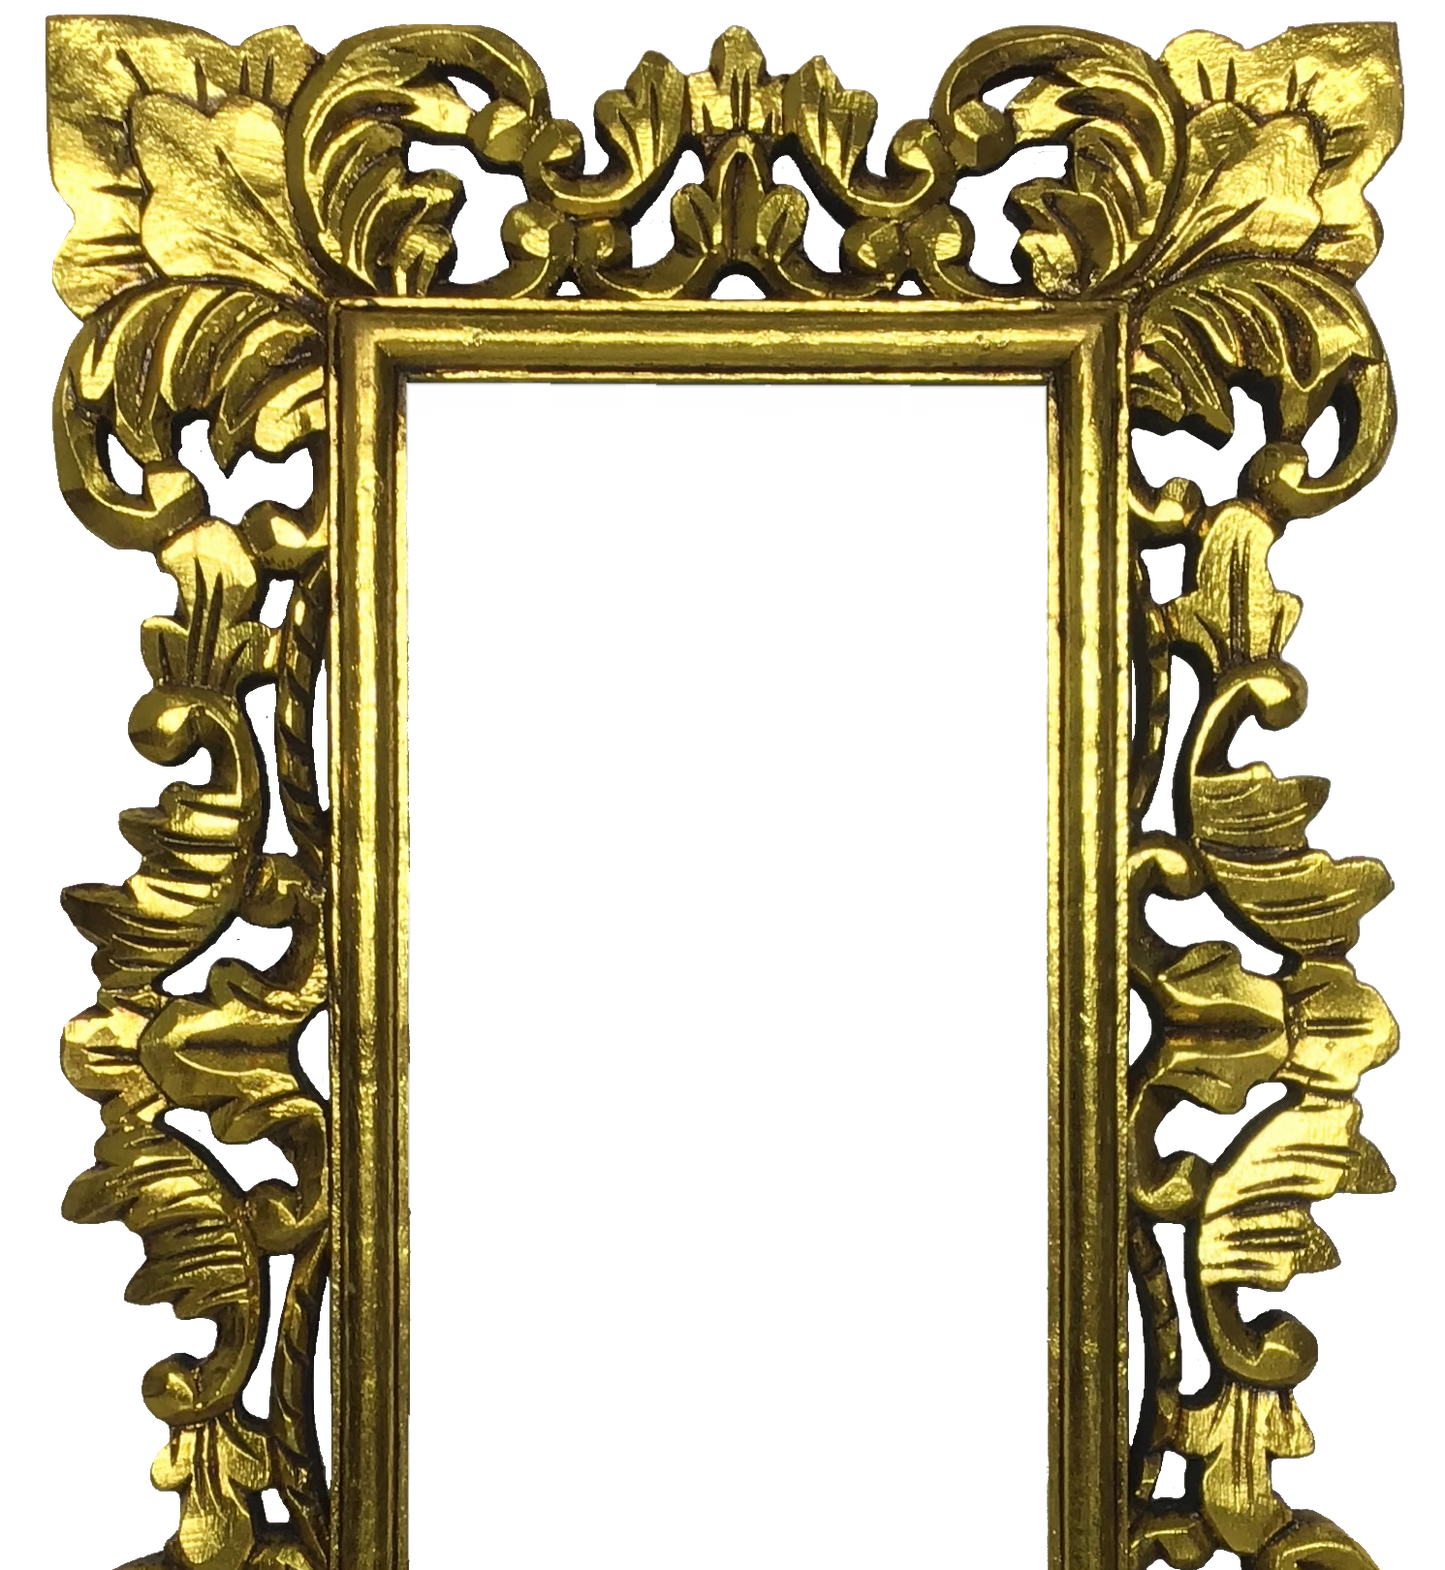 Marco de espejo tallado 60cm x 40cm 